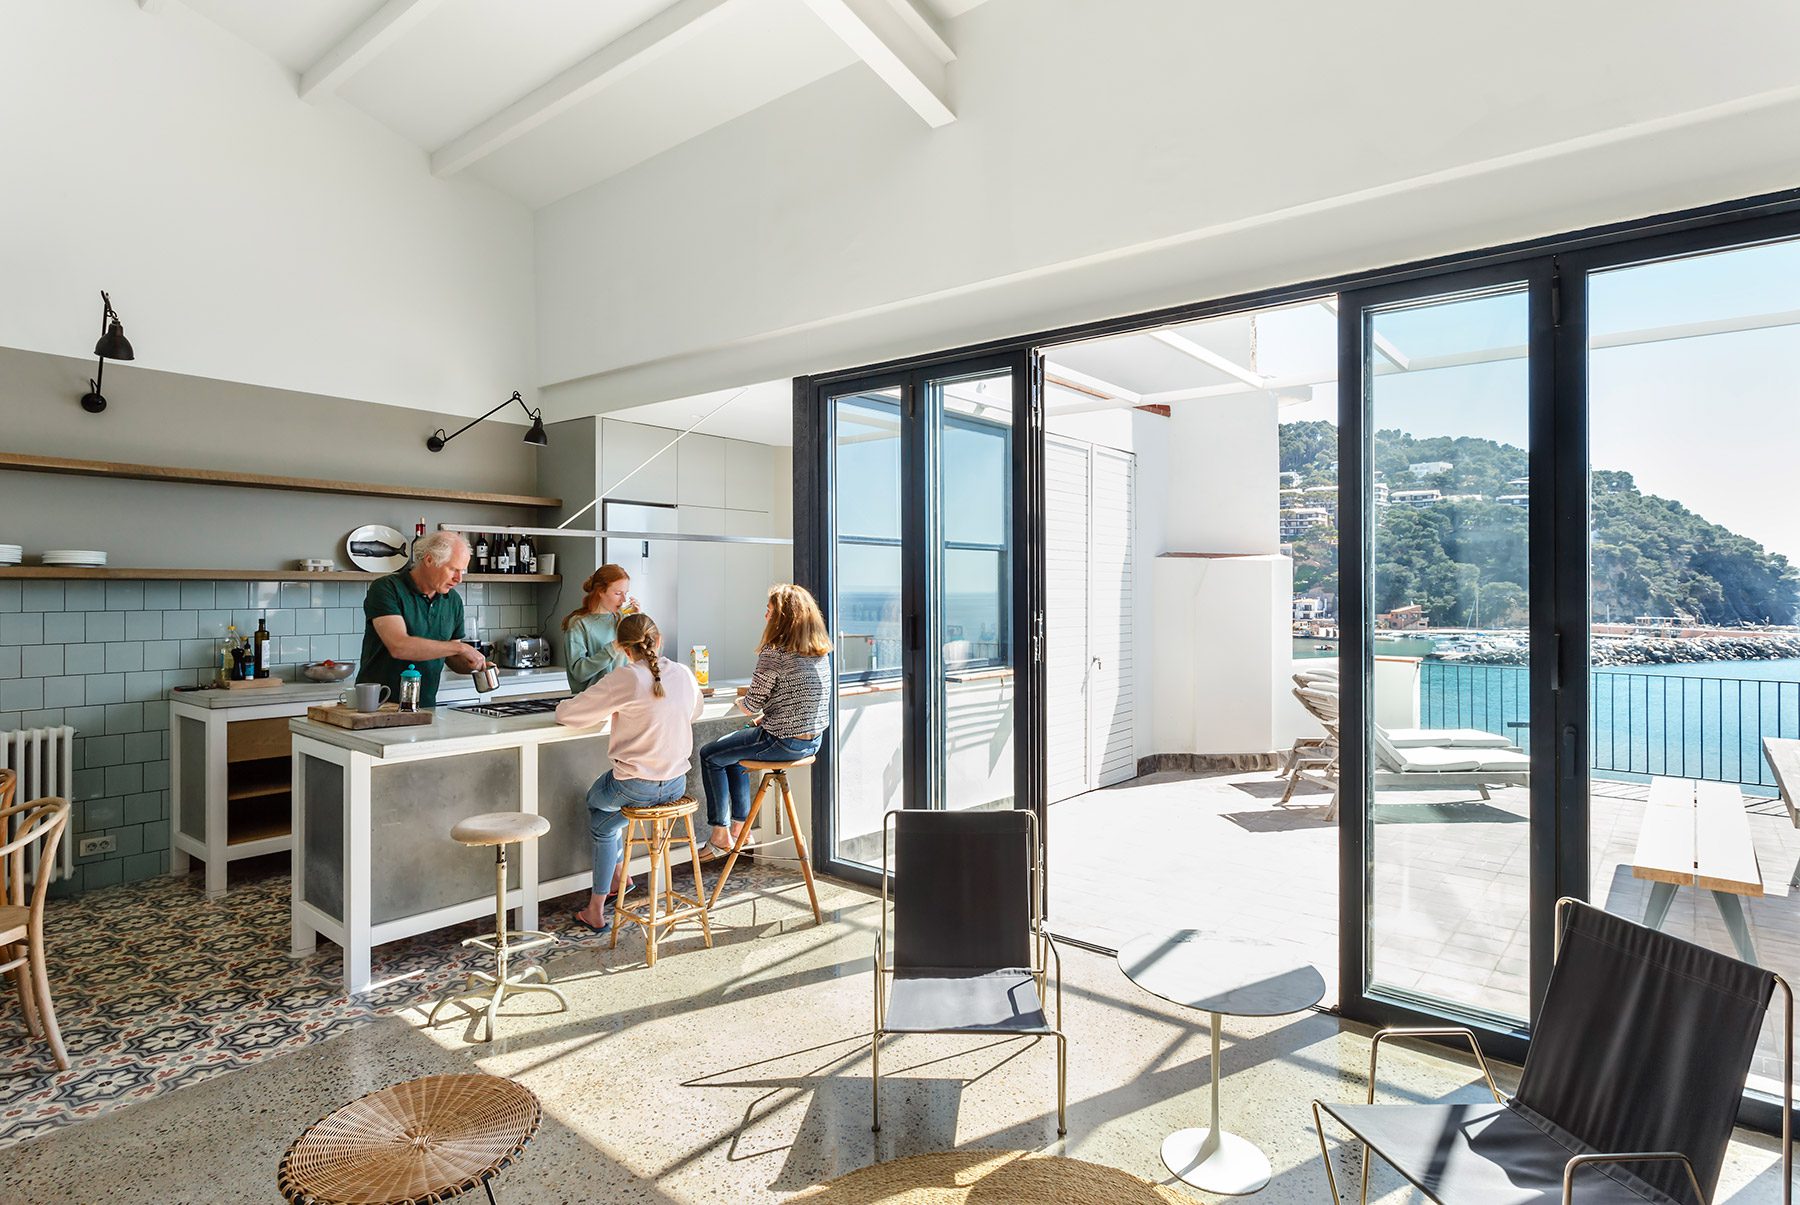 Nook rehabilita una vivienda en la Costa Brava potenciando su origen mediterráneo, con la iluminación natural y las vistas como protagonistas